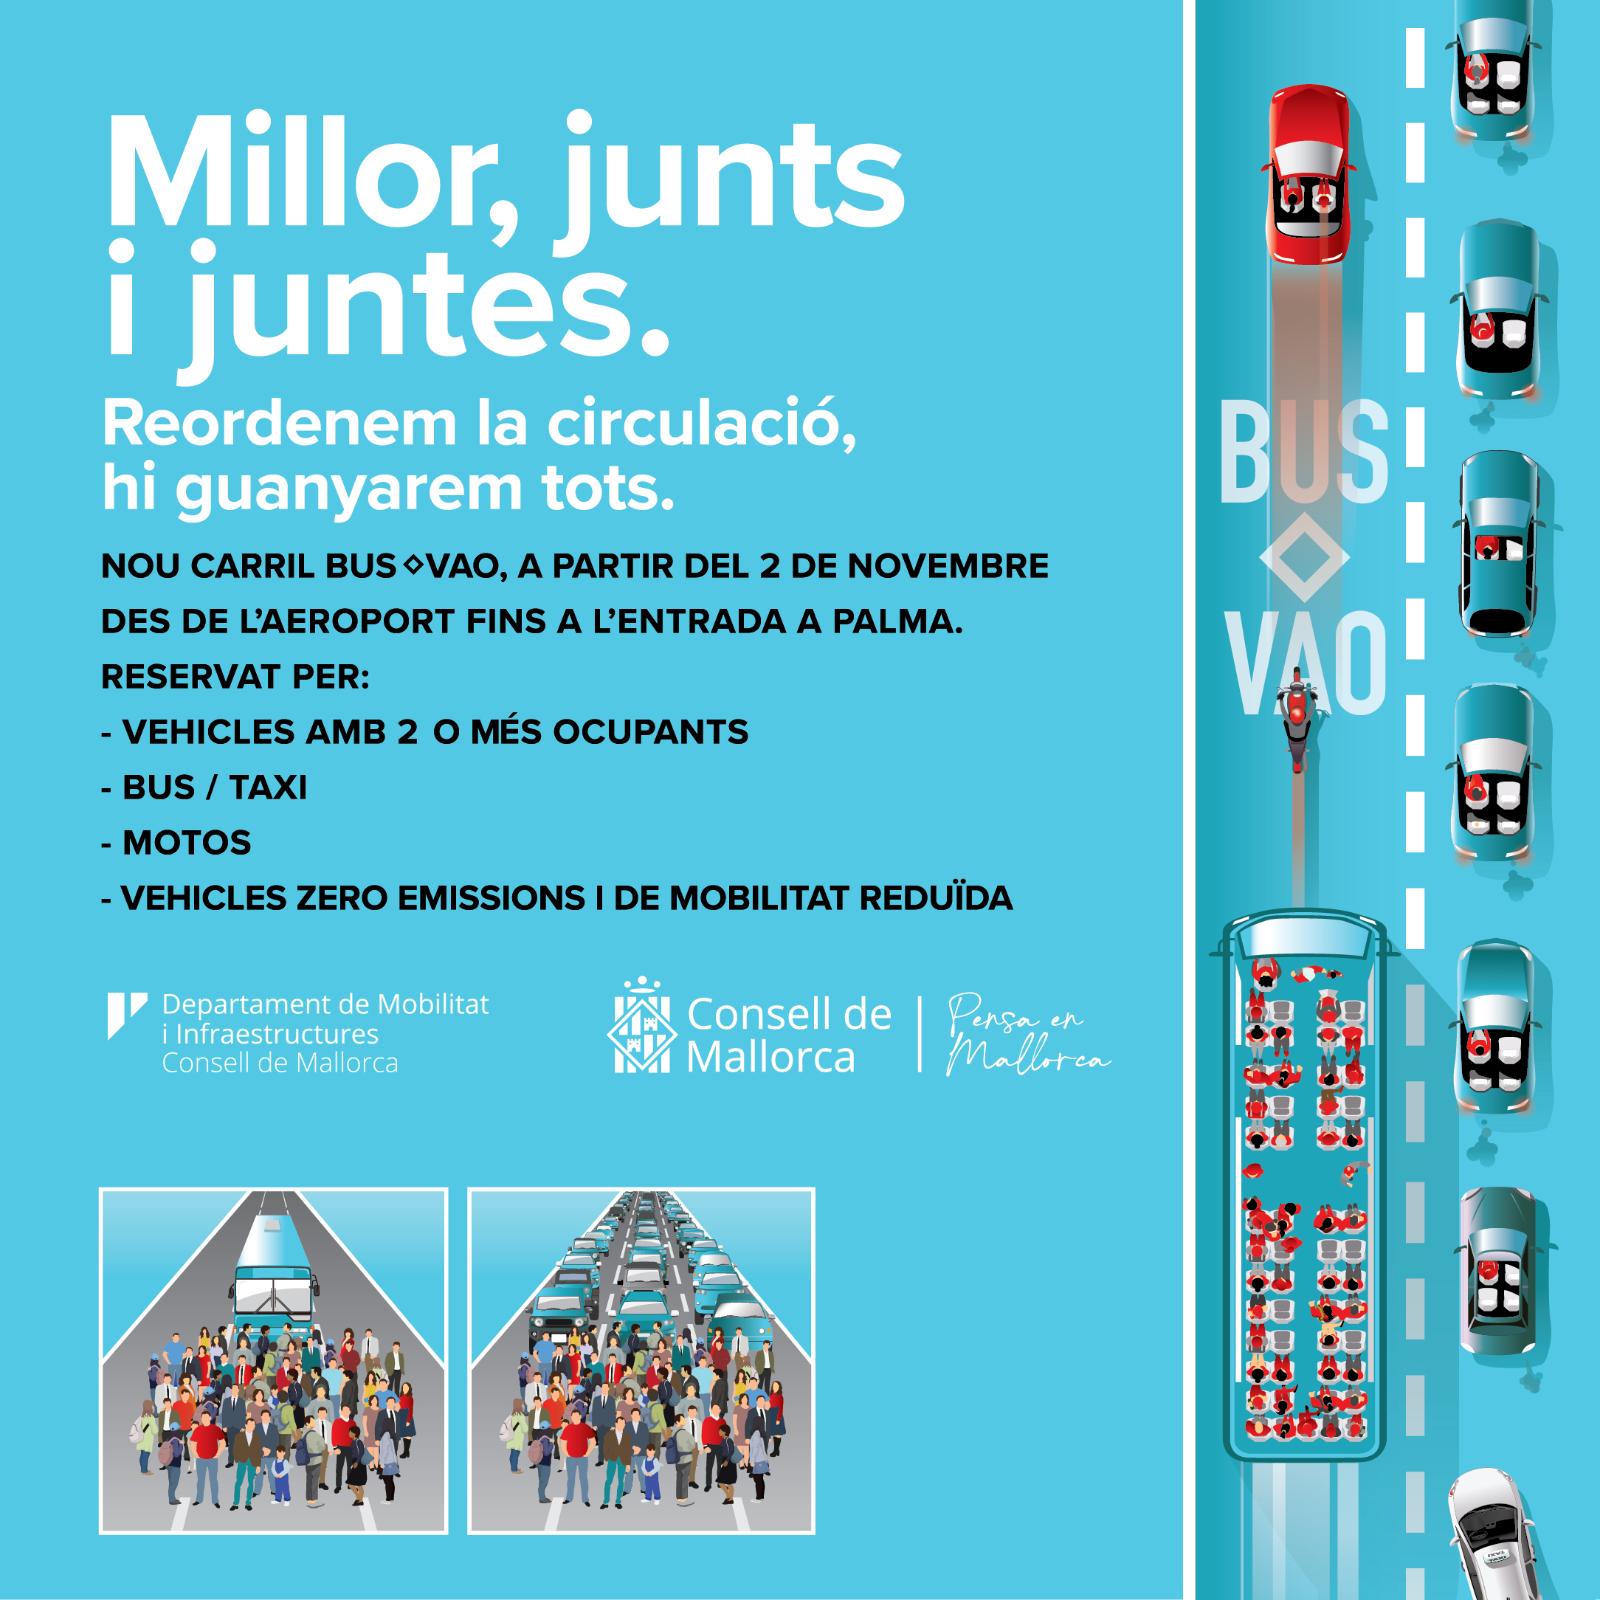 Amb aquesta iniciativa, el Consell de Mallorca i la resta d’Administracions tenen l’objectiu de fomentar l’ús del transport públic i vehicles compartits, reduir les aglomeracions de cotxes a l’entrada de Palma i també l’emissió de partícules contaminants. En aquest sentit, Iván Sevillano, conseller de Mobilitat i Infraestructures, ha explicat que «la implantació de carrils bus VAO és una alternativa de futur en matèria de mobilitat, perquè incentiva l’ús del transport públic, ja que aquest es reservarà a autobusos i taxis per fomentar el transport públic, i a vehicles de 2 o més d’un ocupant, per reduir el nombre de cotxes a les carreteres. Tot això enfocat a minvar les aglomeracions i la contaminació».